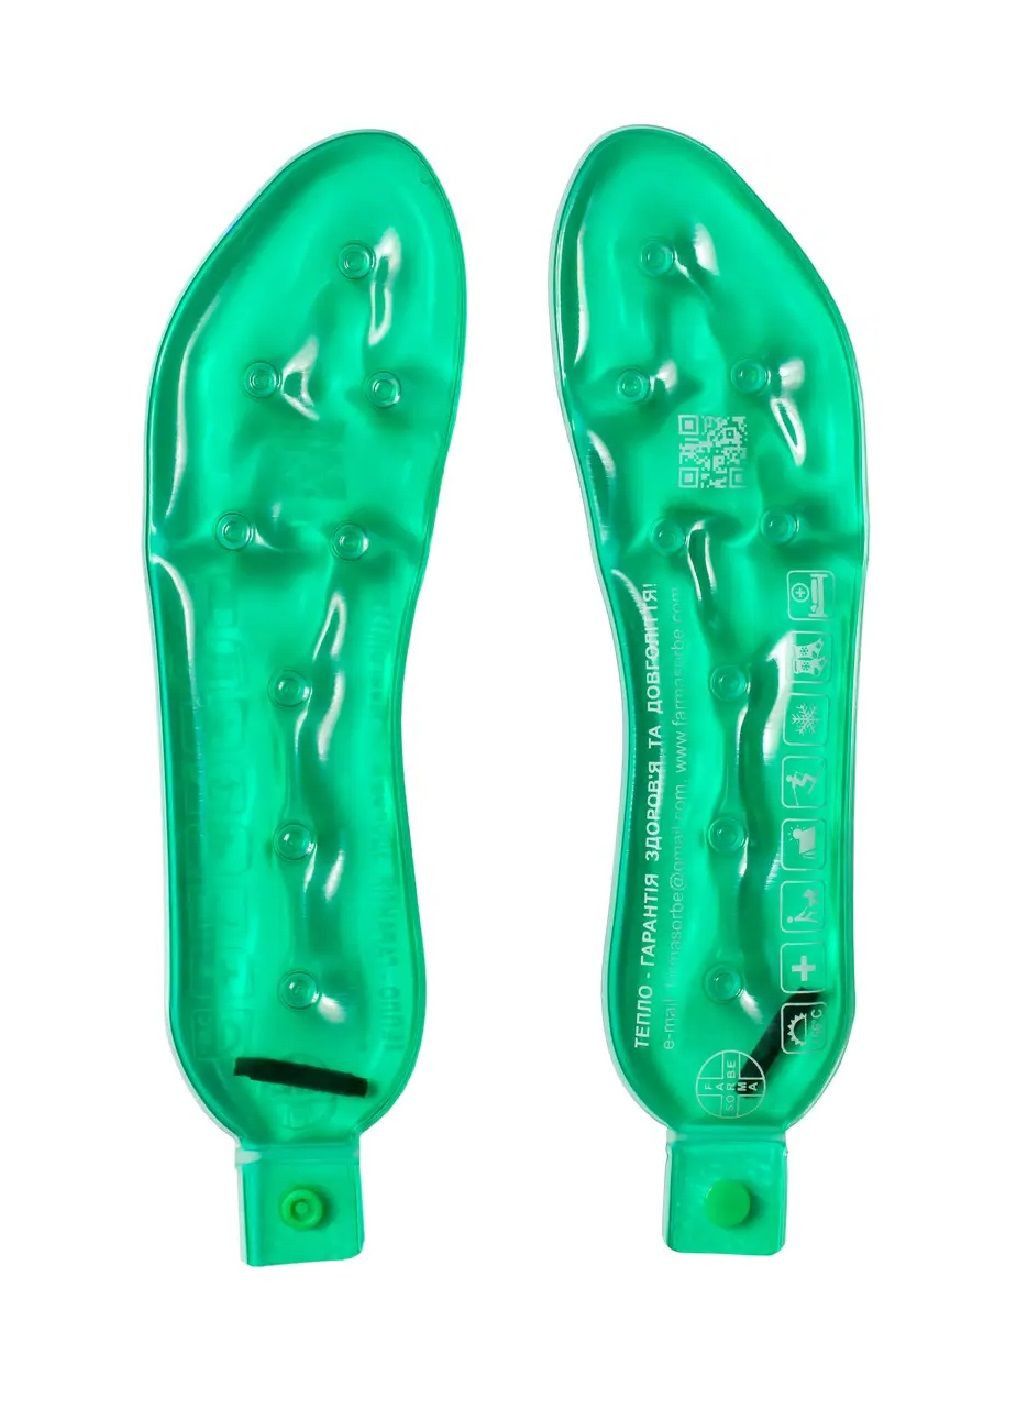 Солевые грелки аппликаторы подошвы стельки многоразовые медицинские согревающие 25х7 см (476396-Prob) Зеленые Unbranded (280916832)